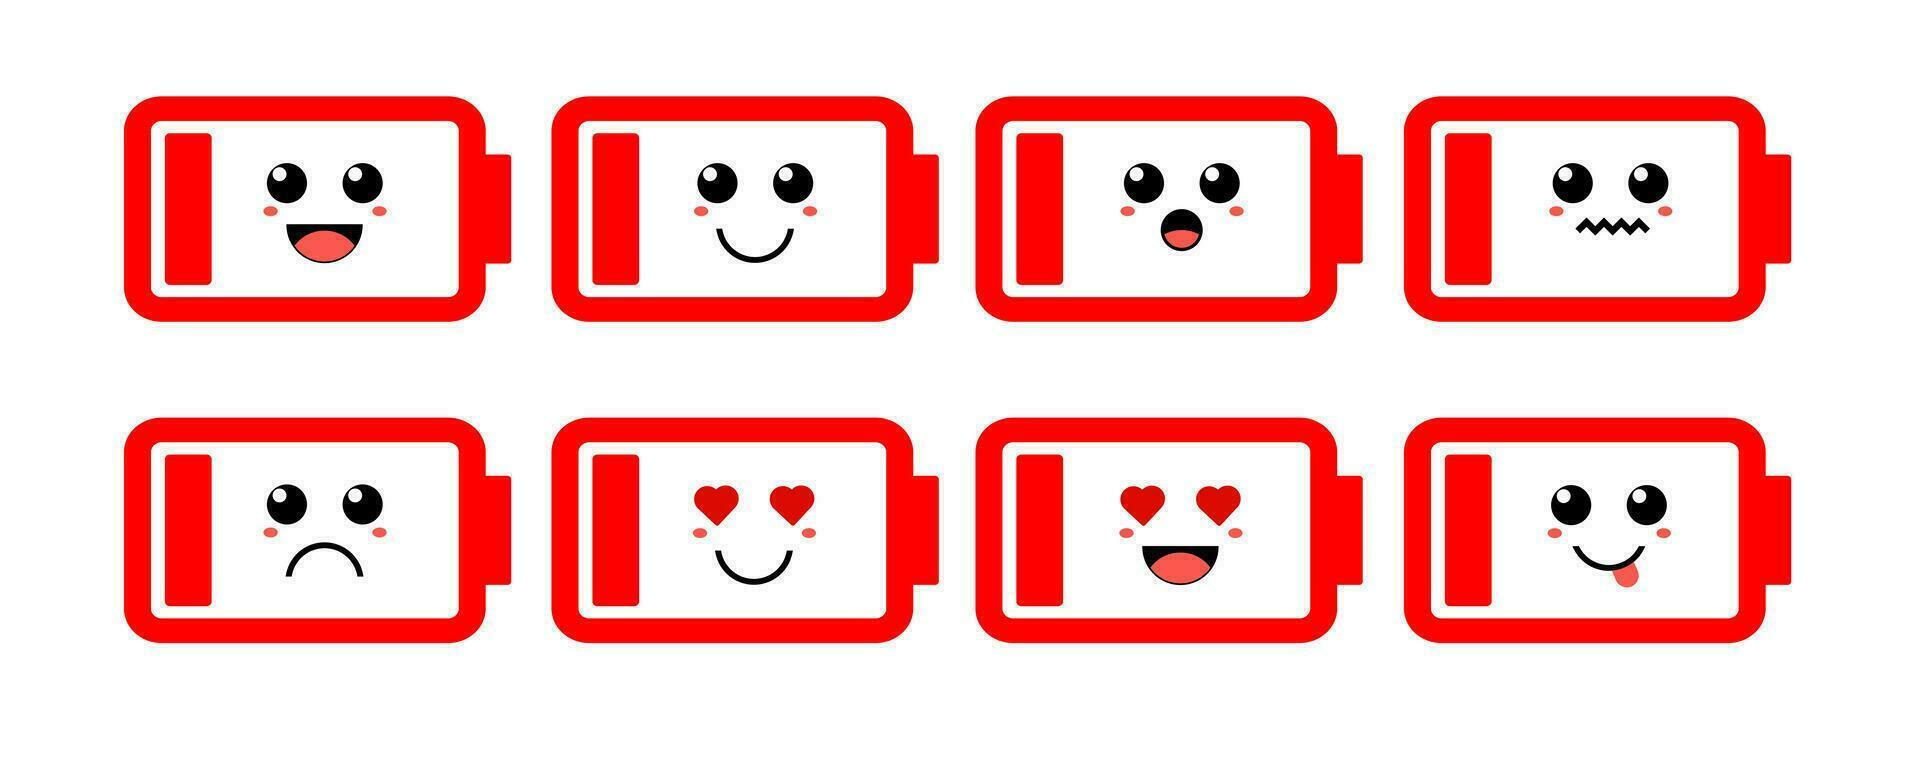 impostato di carino cartone animato colorato rosso Basso batteria con diverso emozioni. divertente emozioni personaggio collezione per bambini. fantasia personaggi. vettore illustrazioni, cartone animato piatto stile